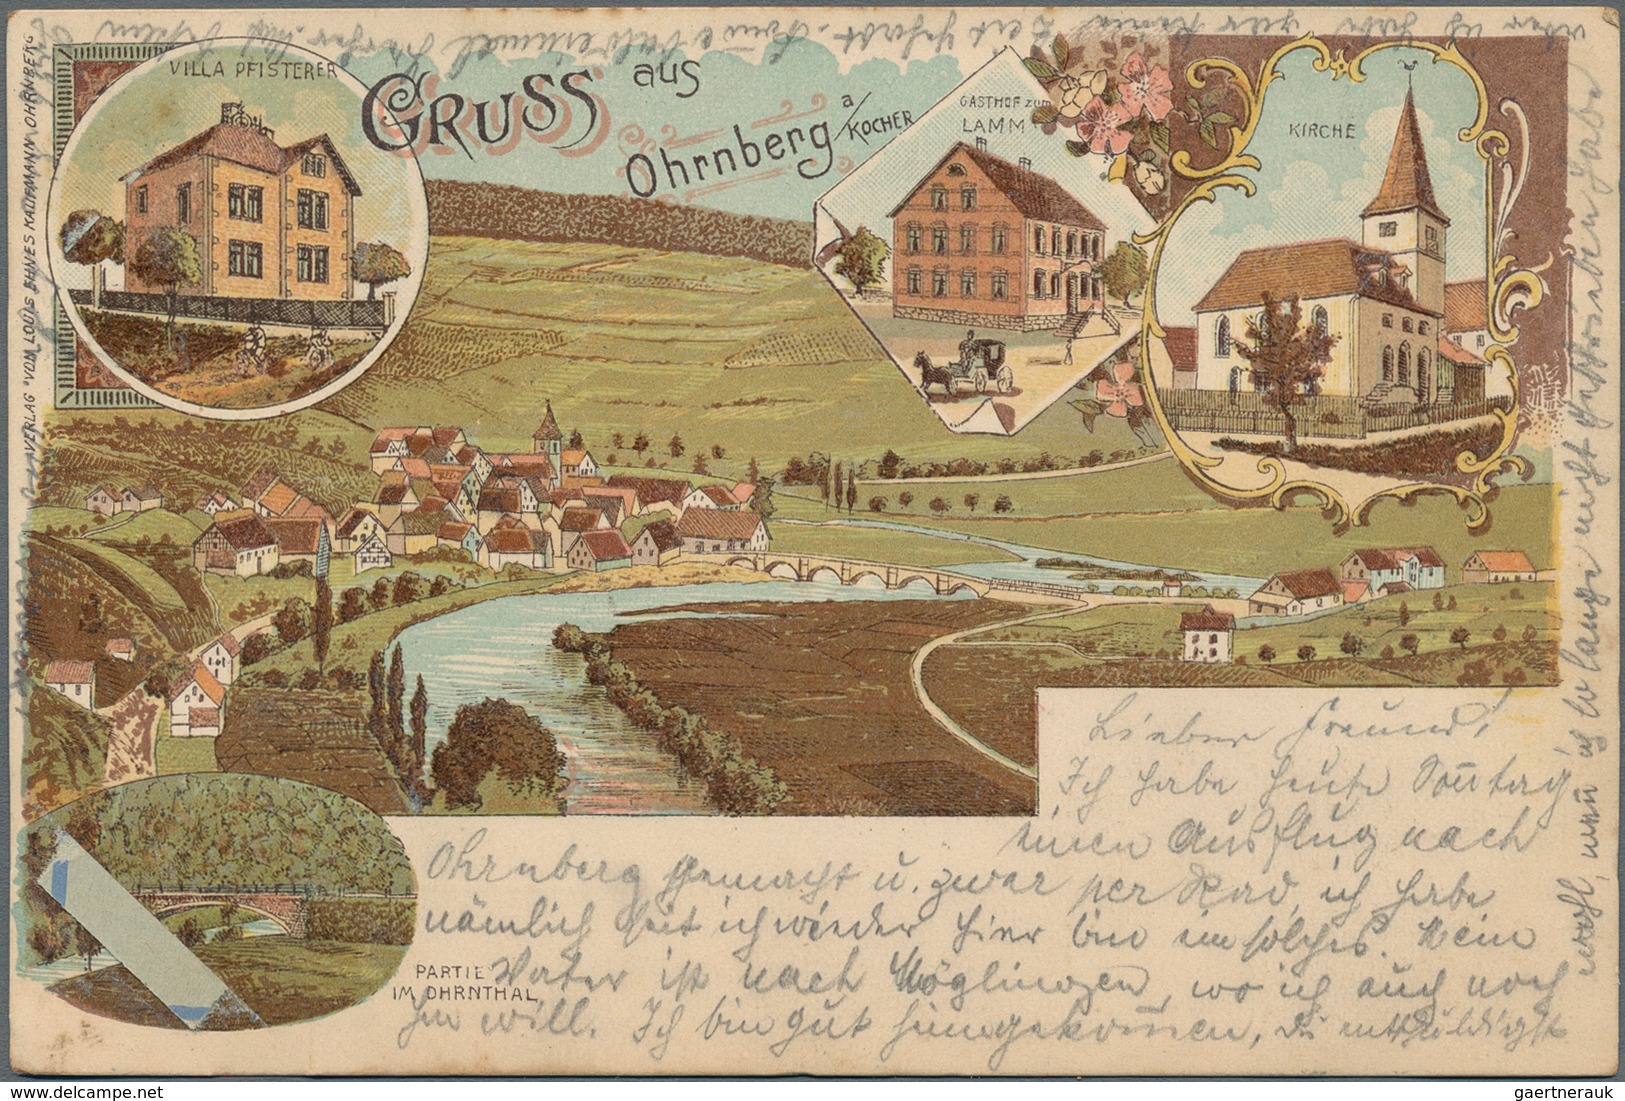 Ansichtskarten: 1900-1920, Partie mit über 500 Karten, dabei tolle Lithos, Straßenkarten, Gaststätte